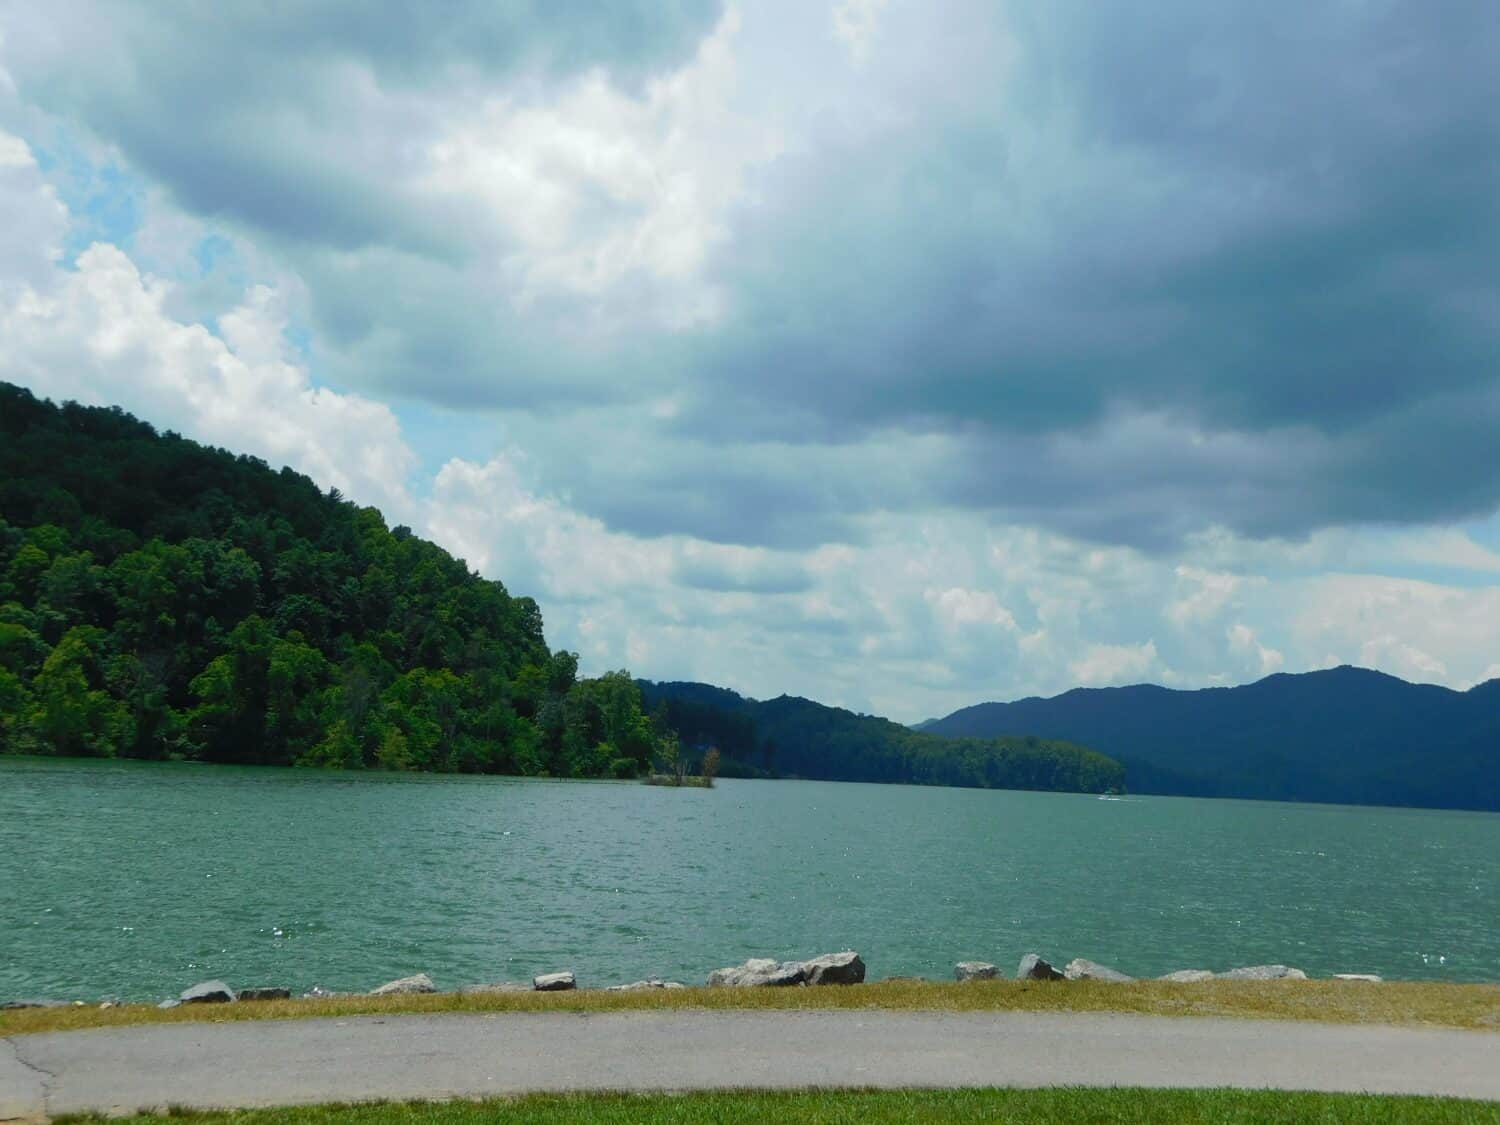 Serene scenic view of Watauga Lake, Tennessee